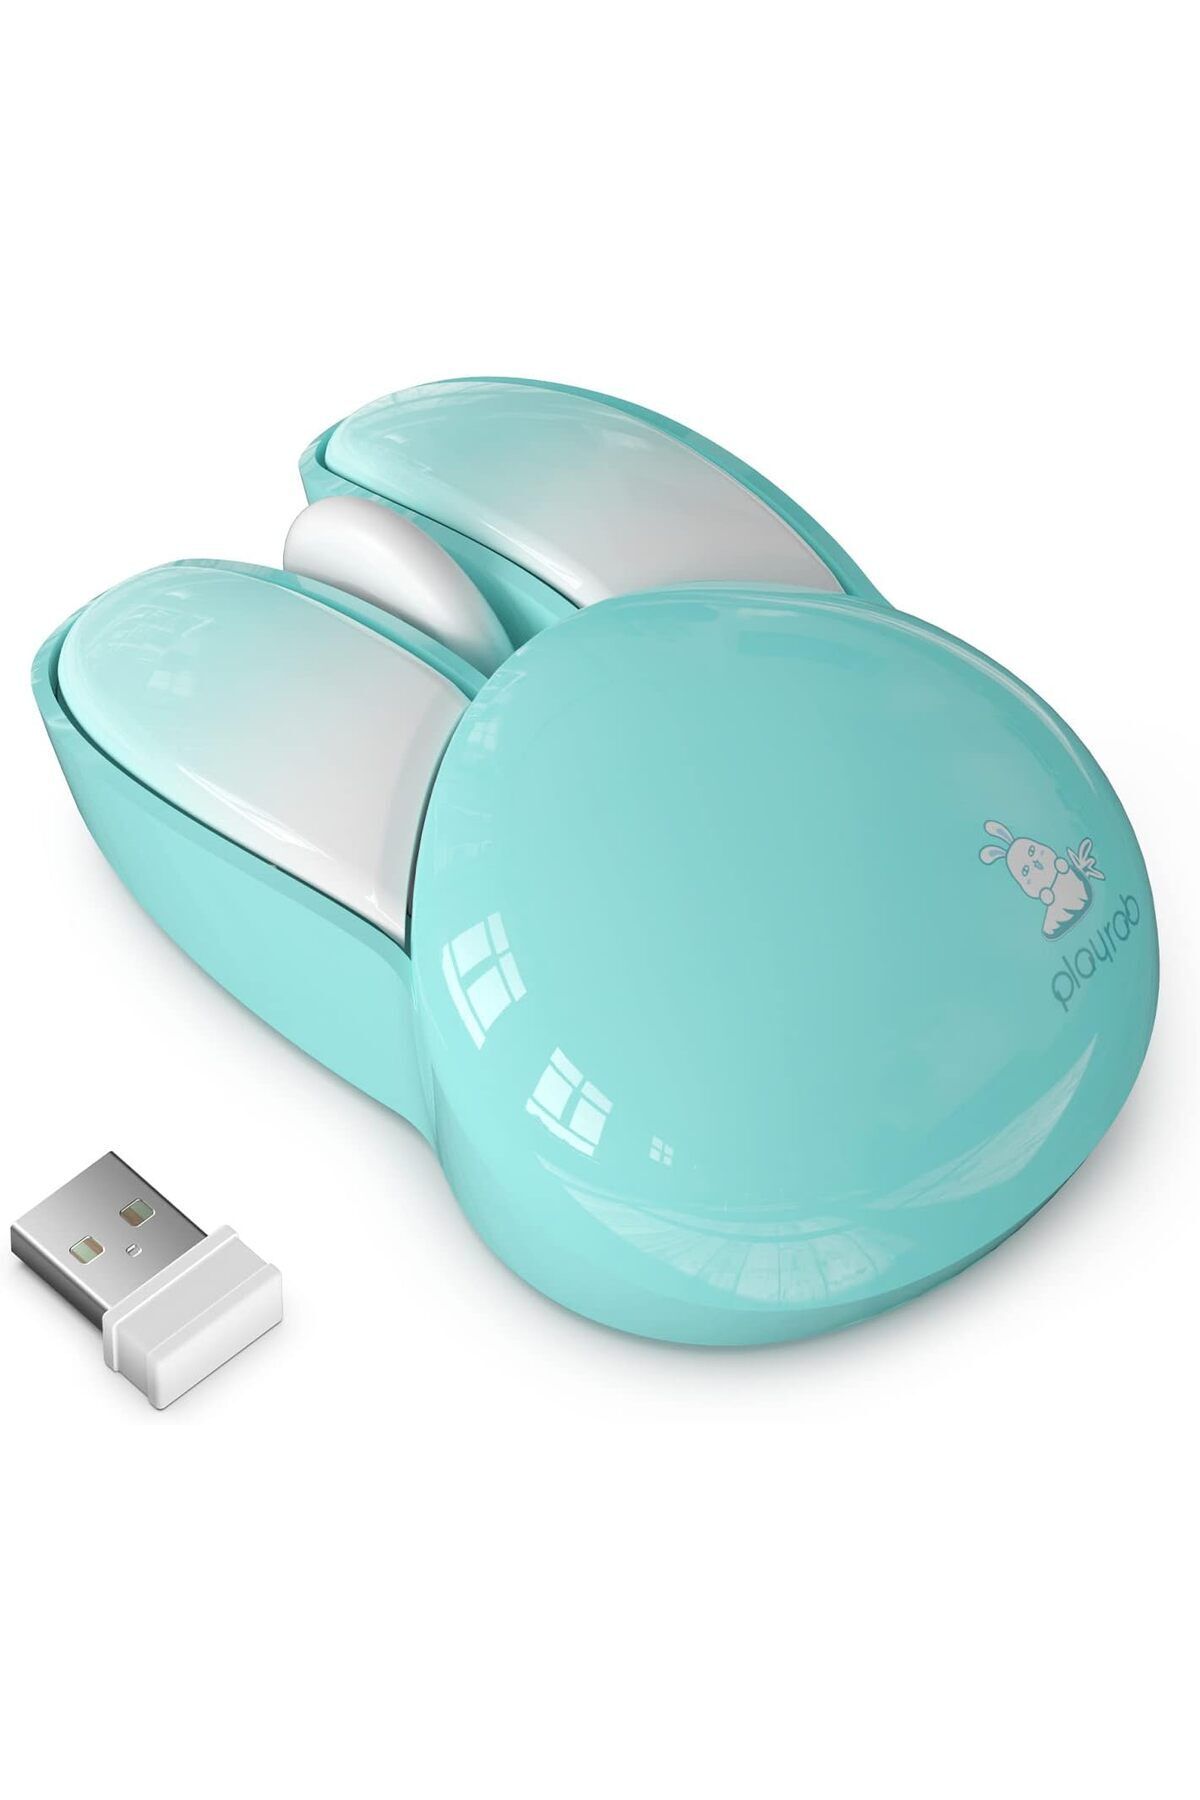 Mofii Wireless Mouse Renkli Tavşan Tasarım Kablosuz Bilgisayar Notebook Mouse 9.2cm x 6cm